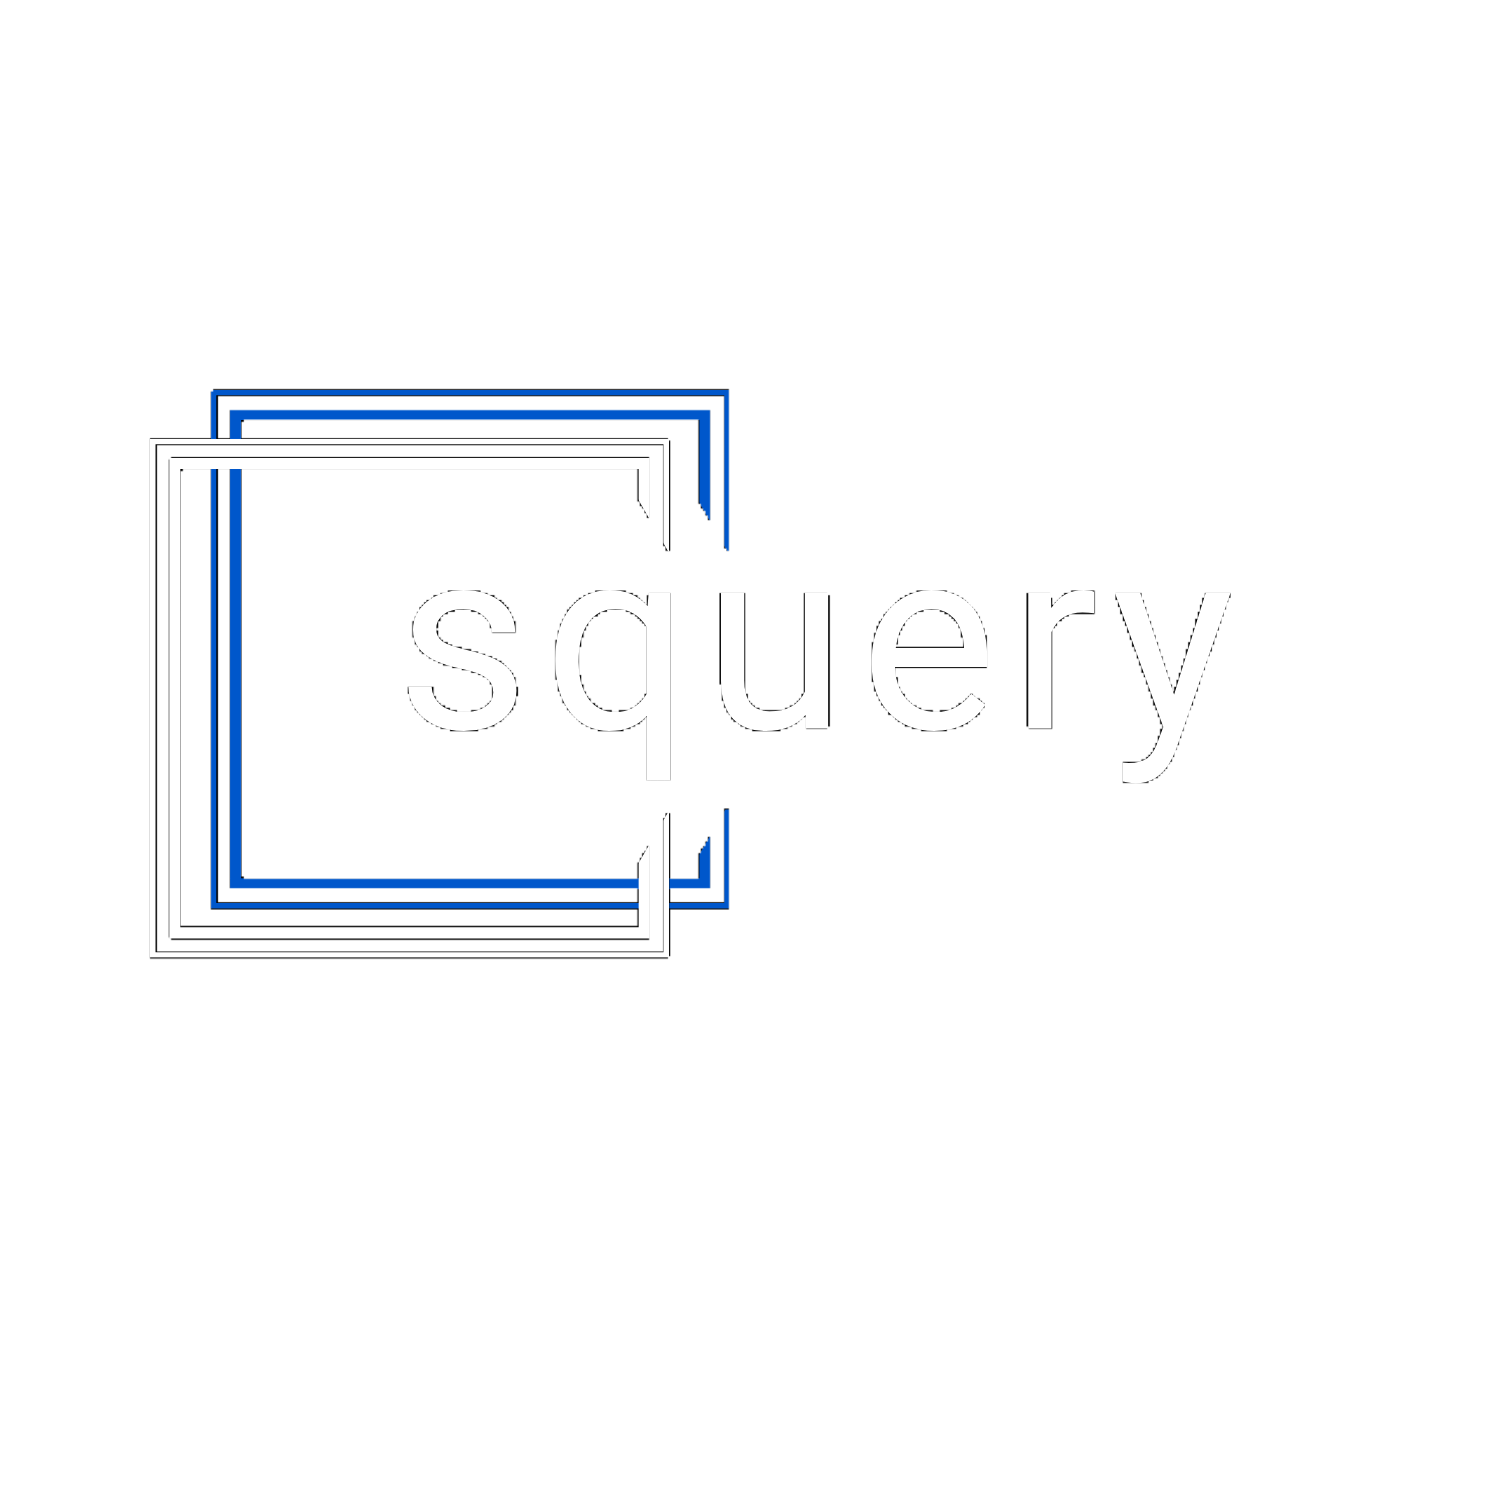 Squery logo